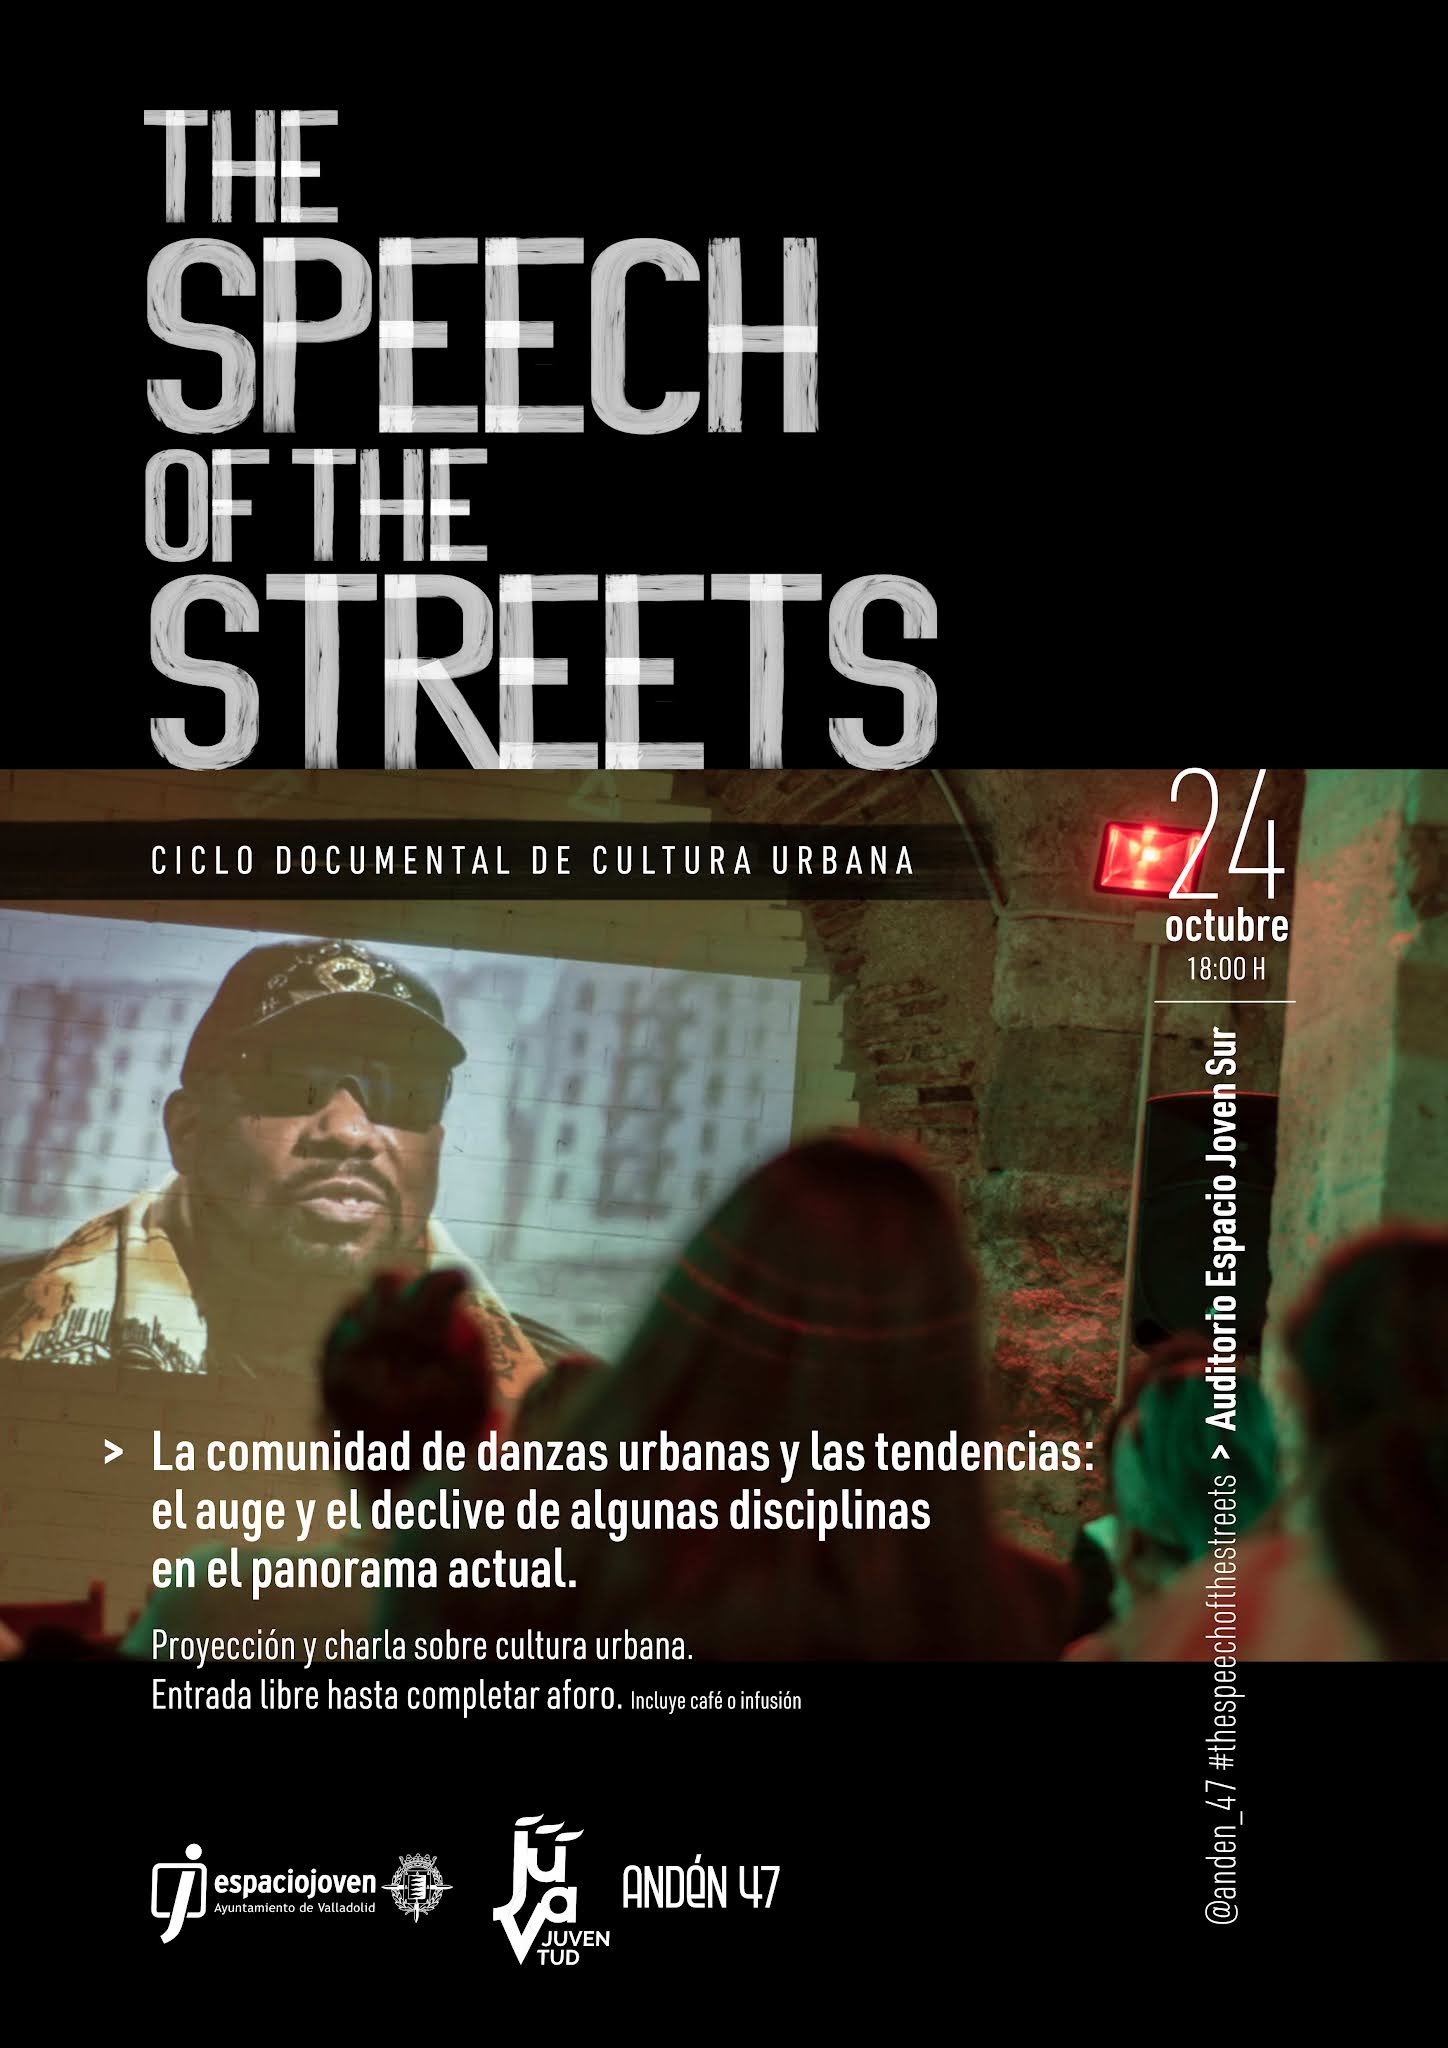 El ciclo de documentales "The Speech of the Streets" regresa este domingo 24 al Espacio Joven Sur Valladolid